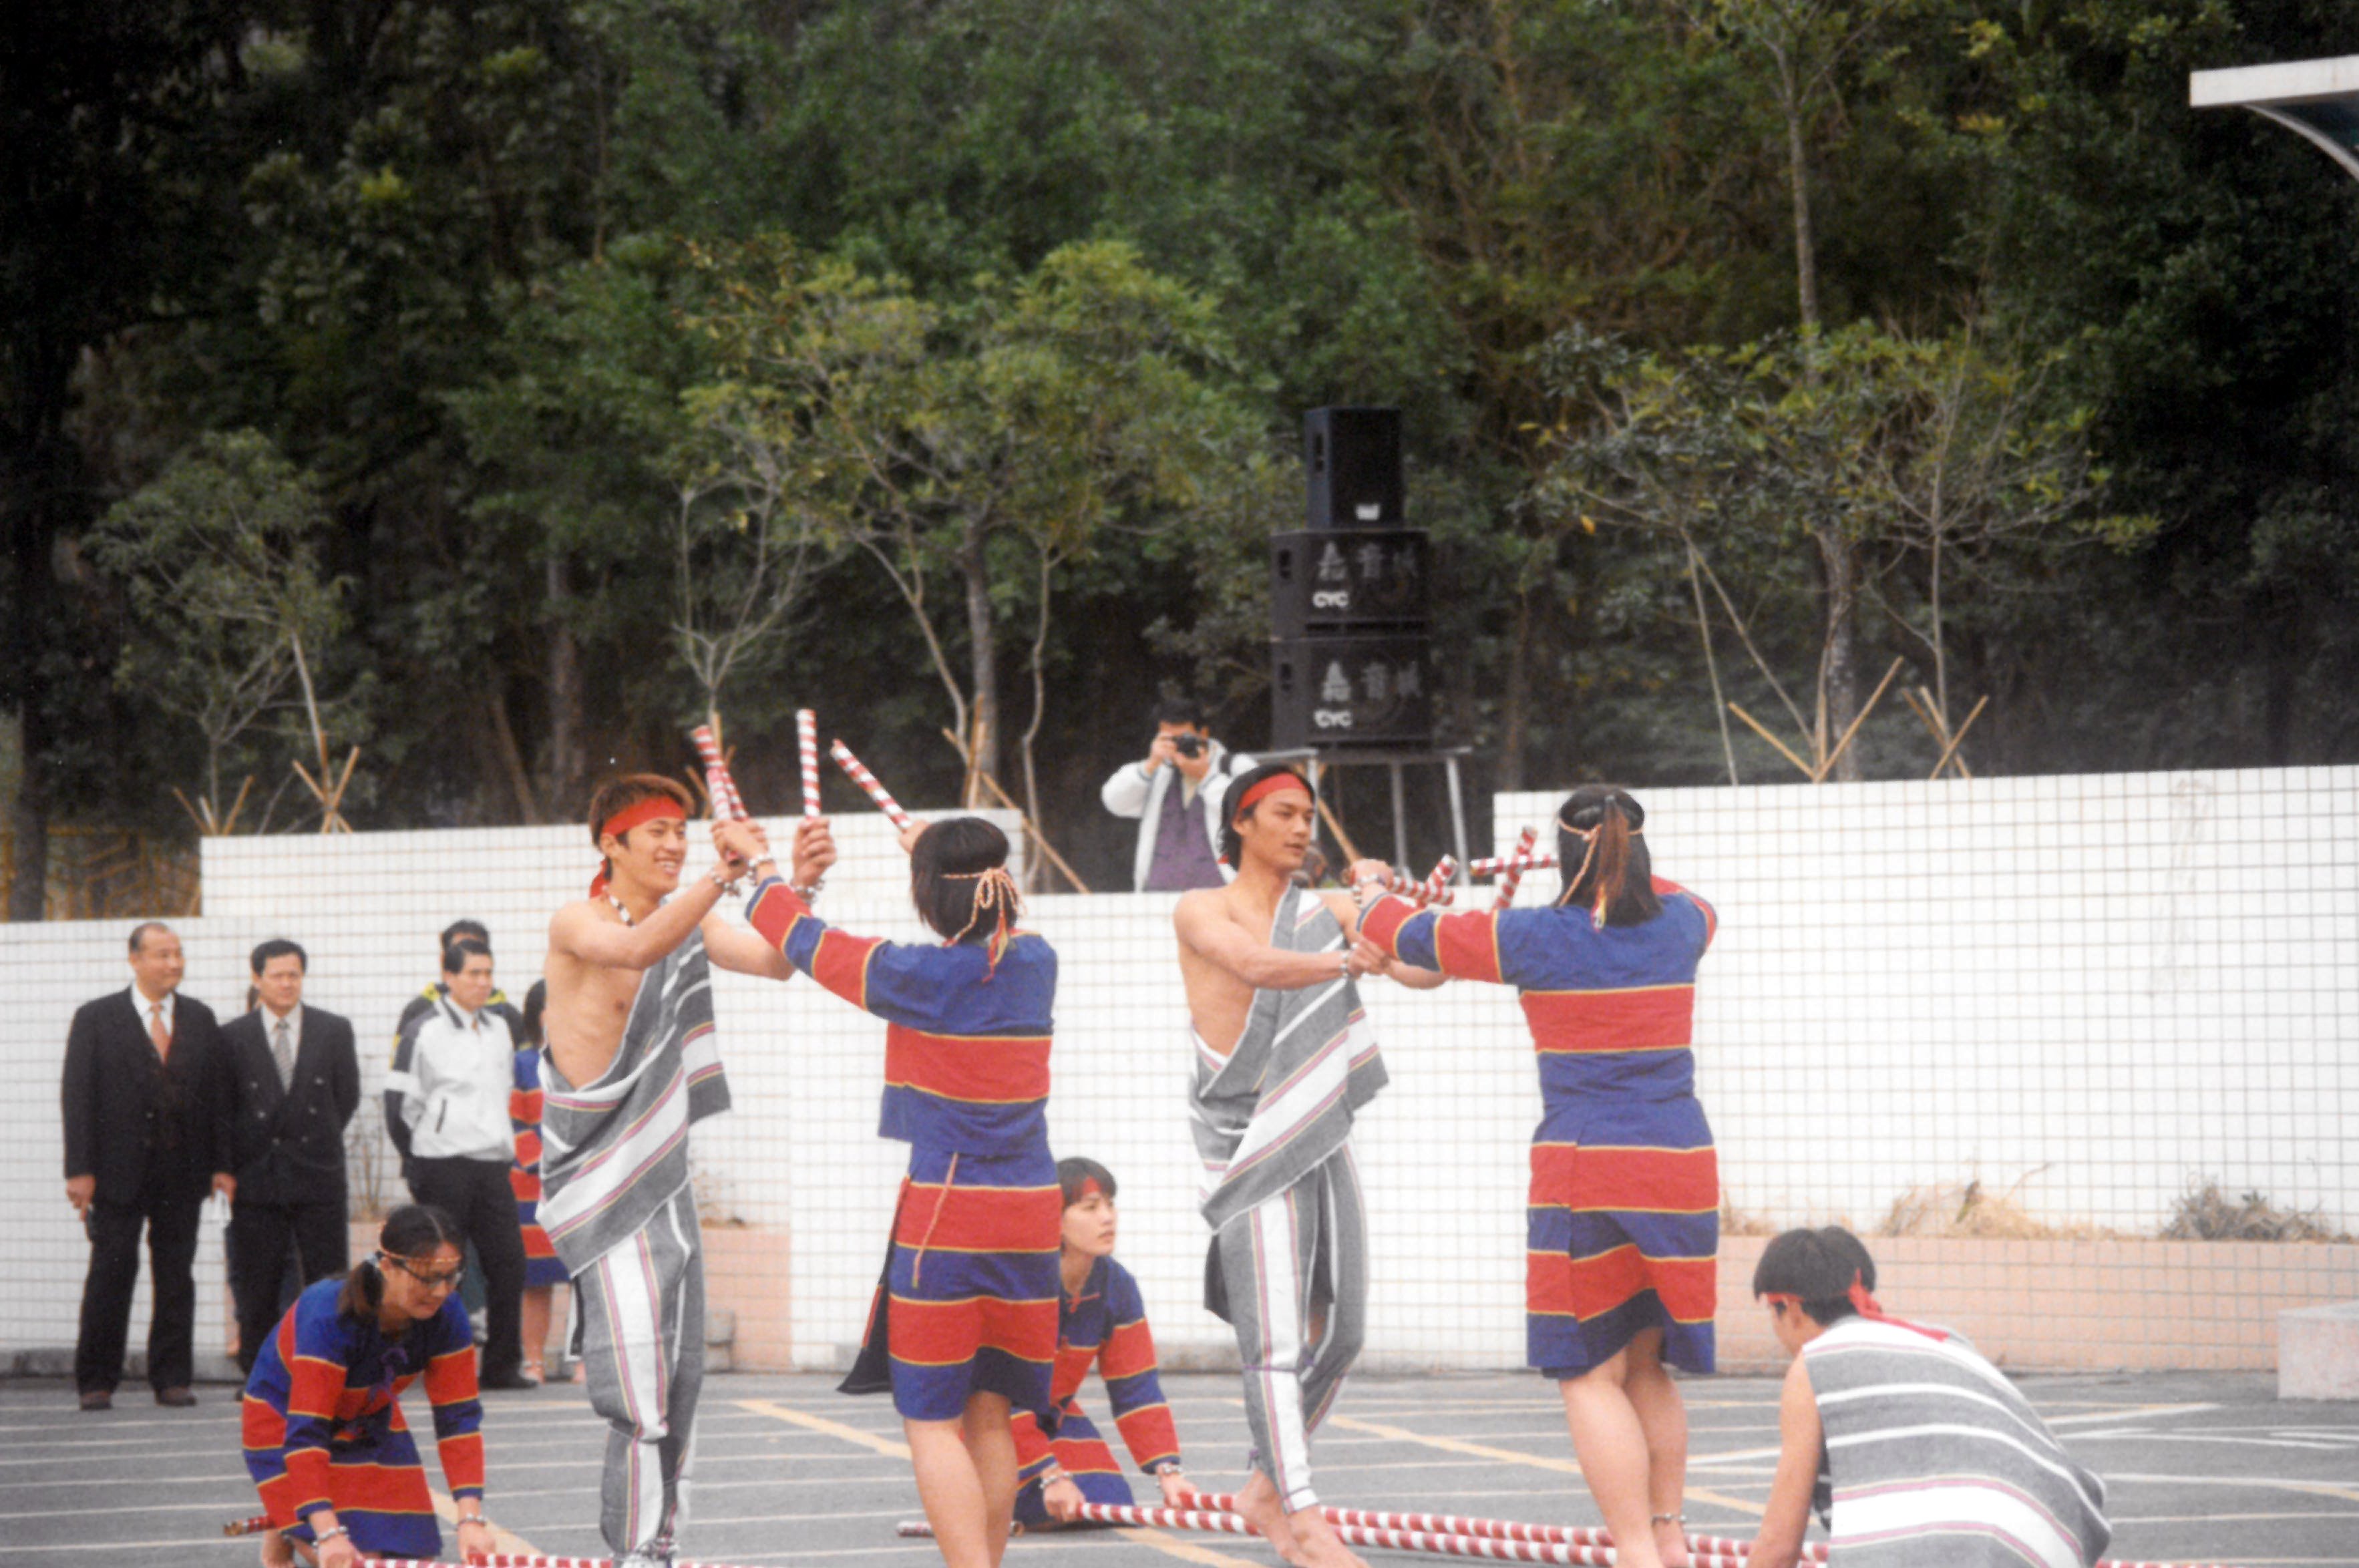 001.89年2月1日嘉義大學成立揭牌暨校長佈達典禮-原住民舞蹈表演